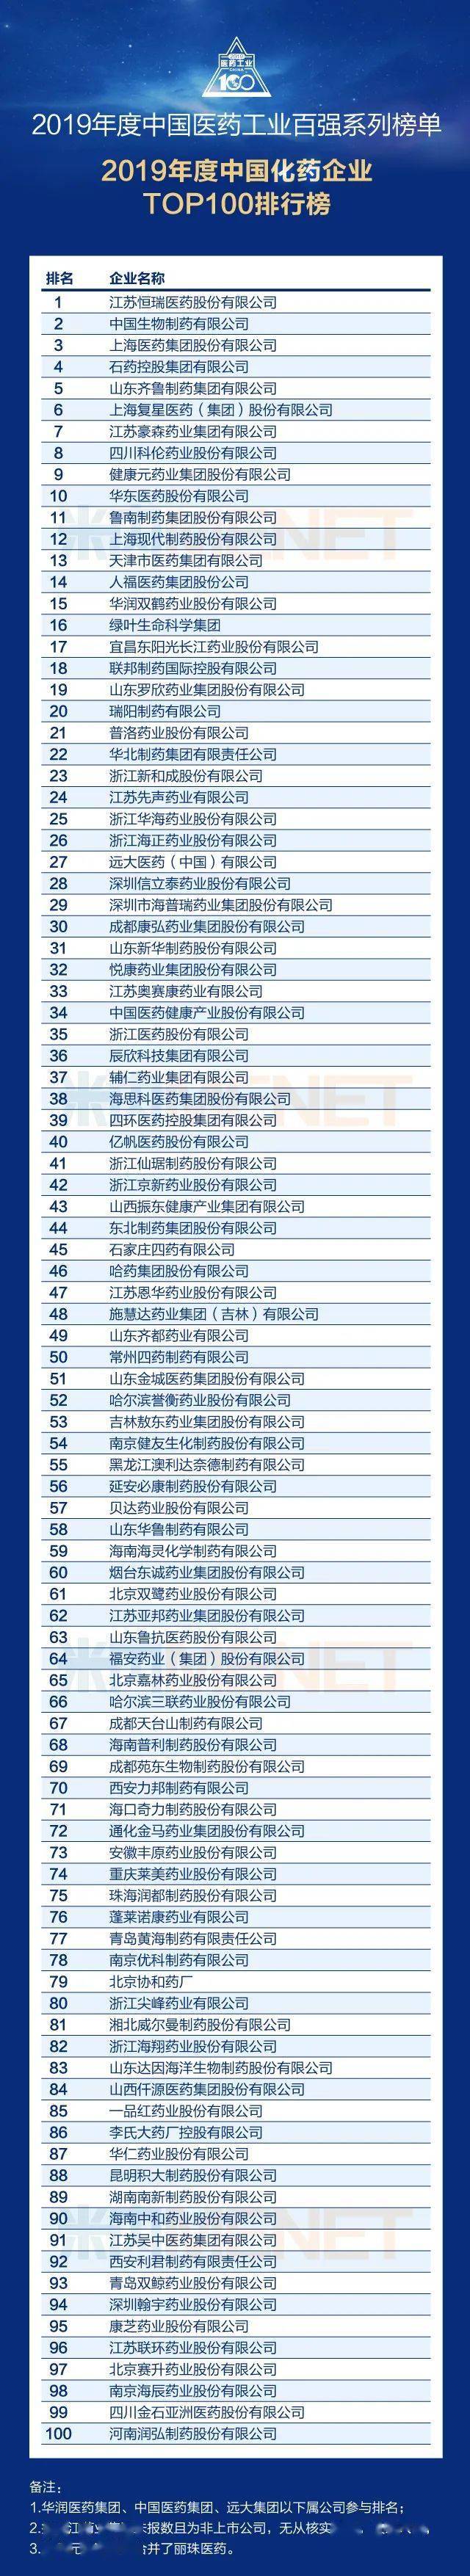 2019年度中国医药工业百强系列榜单发布！ 不惧风雨成就标杆